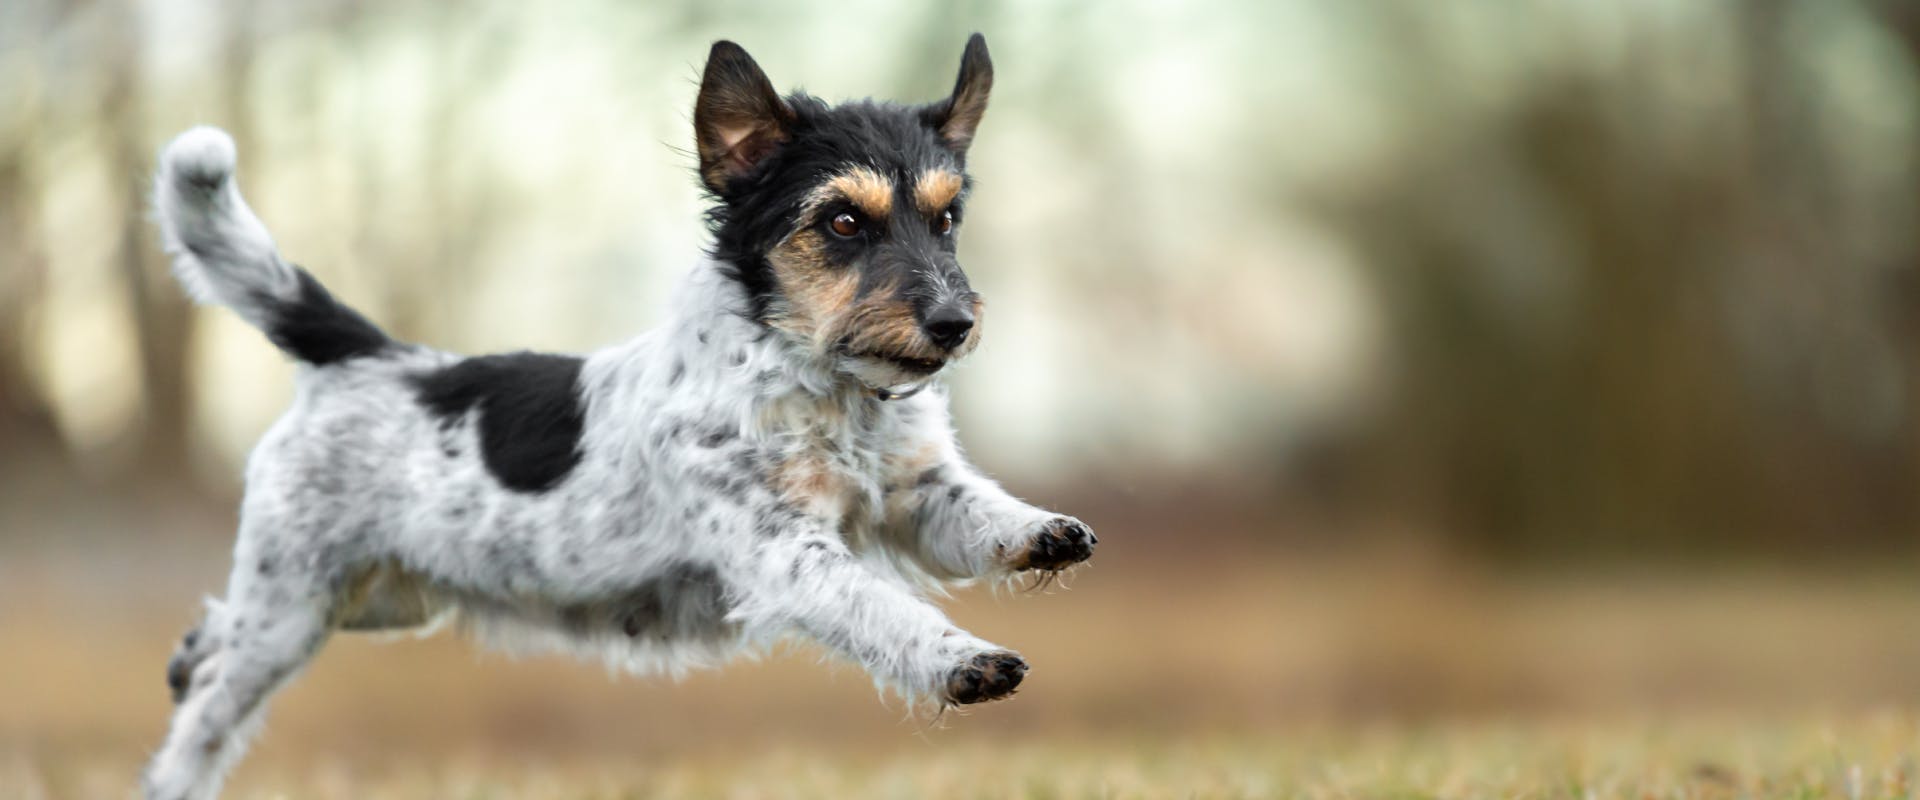 A dog leaps through the air.